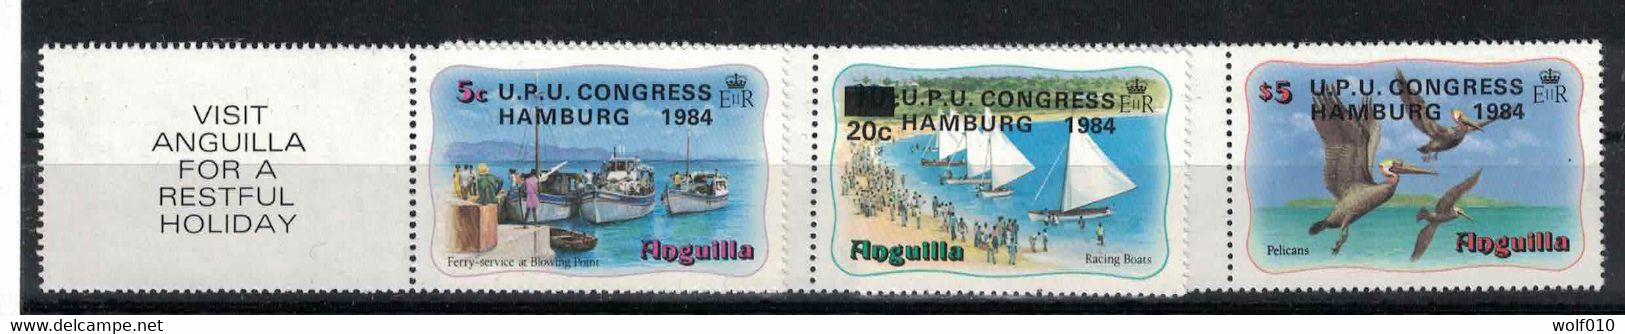 Anguilla. 1984. UPU Congress. MNH Set. SCV = 7.65 - Pélicans